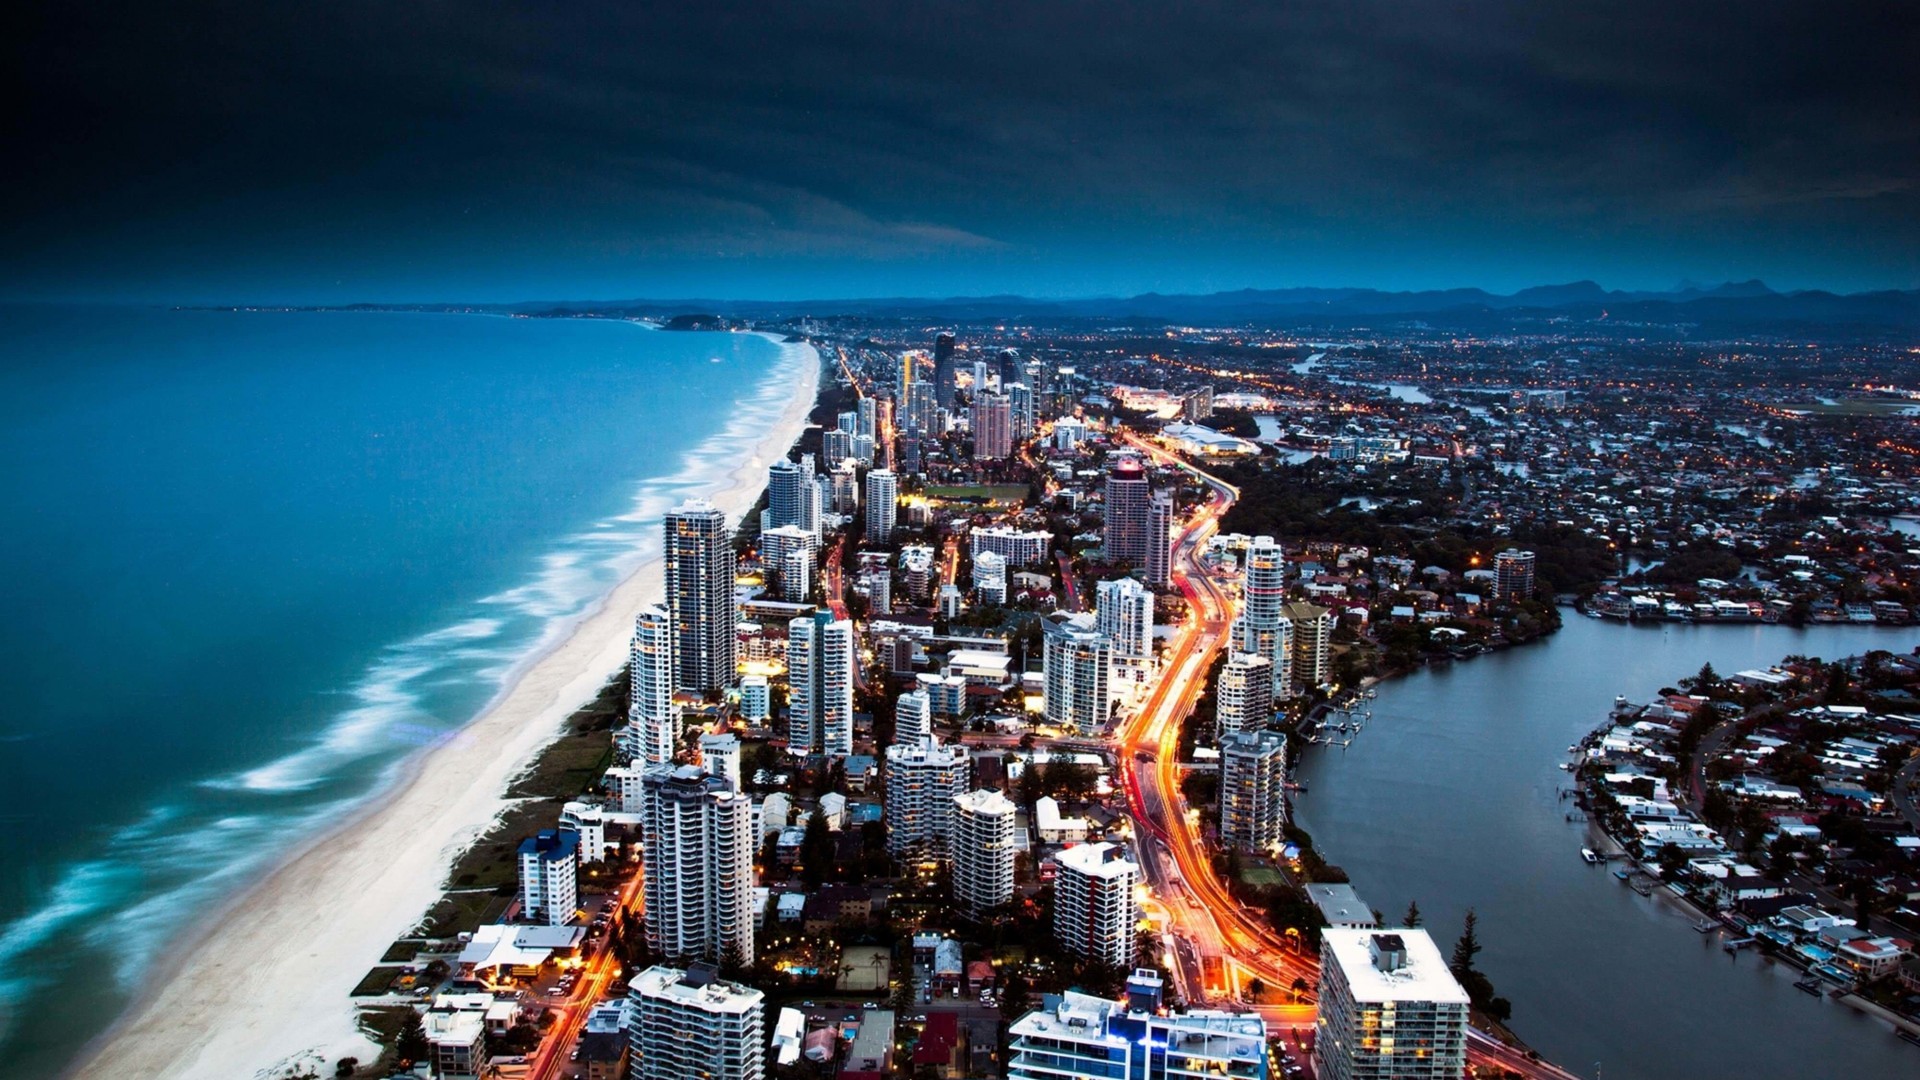 Gold Coast City in Queensland, Australia Wallpaper for Desktop 1920x1080